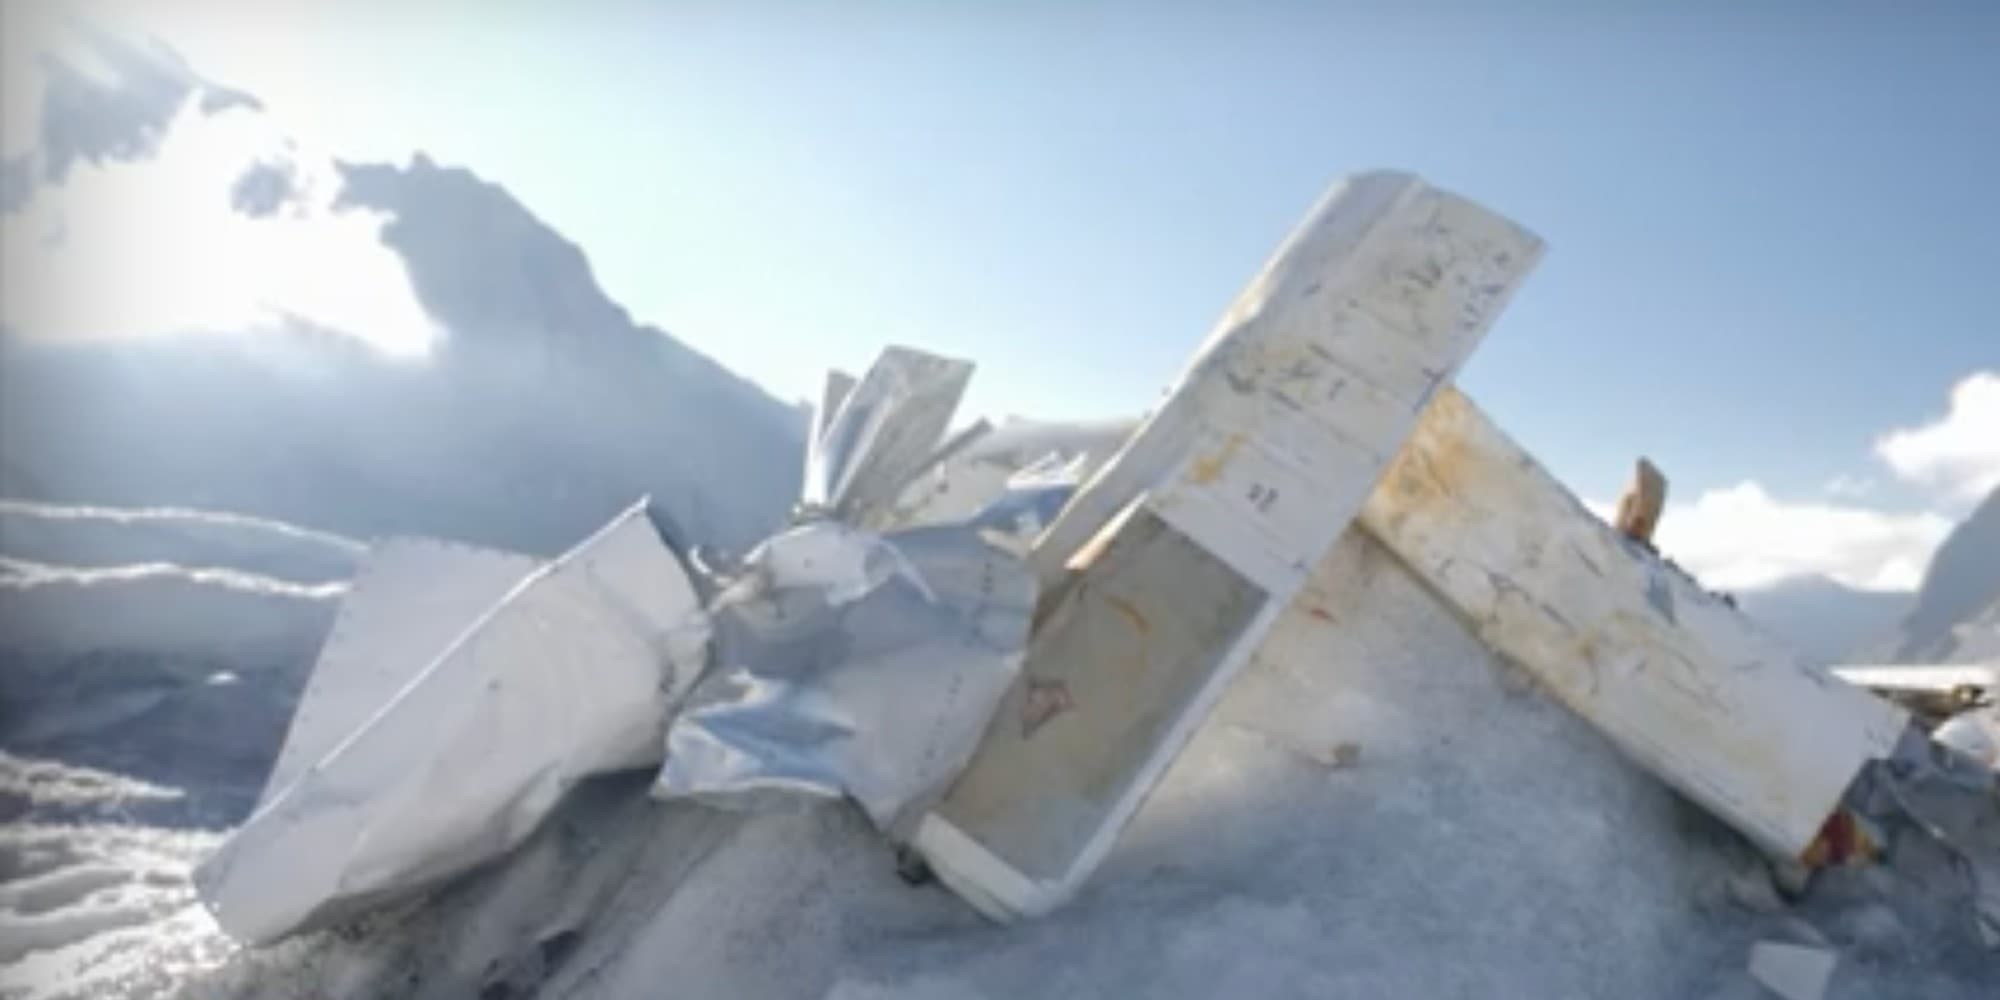 Έλιωσε ο παγετώνας και εμφανίστηκαν συντρίμμια αεροπλάνου που συνετρίβη το 1968 στην Ελβετία